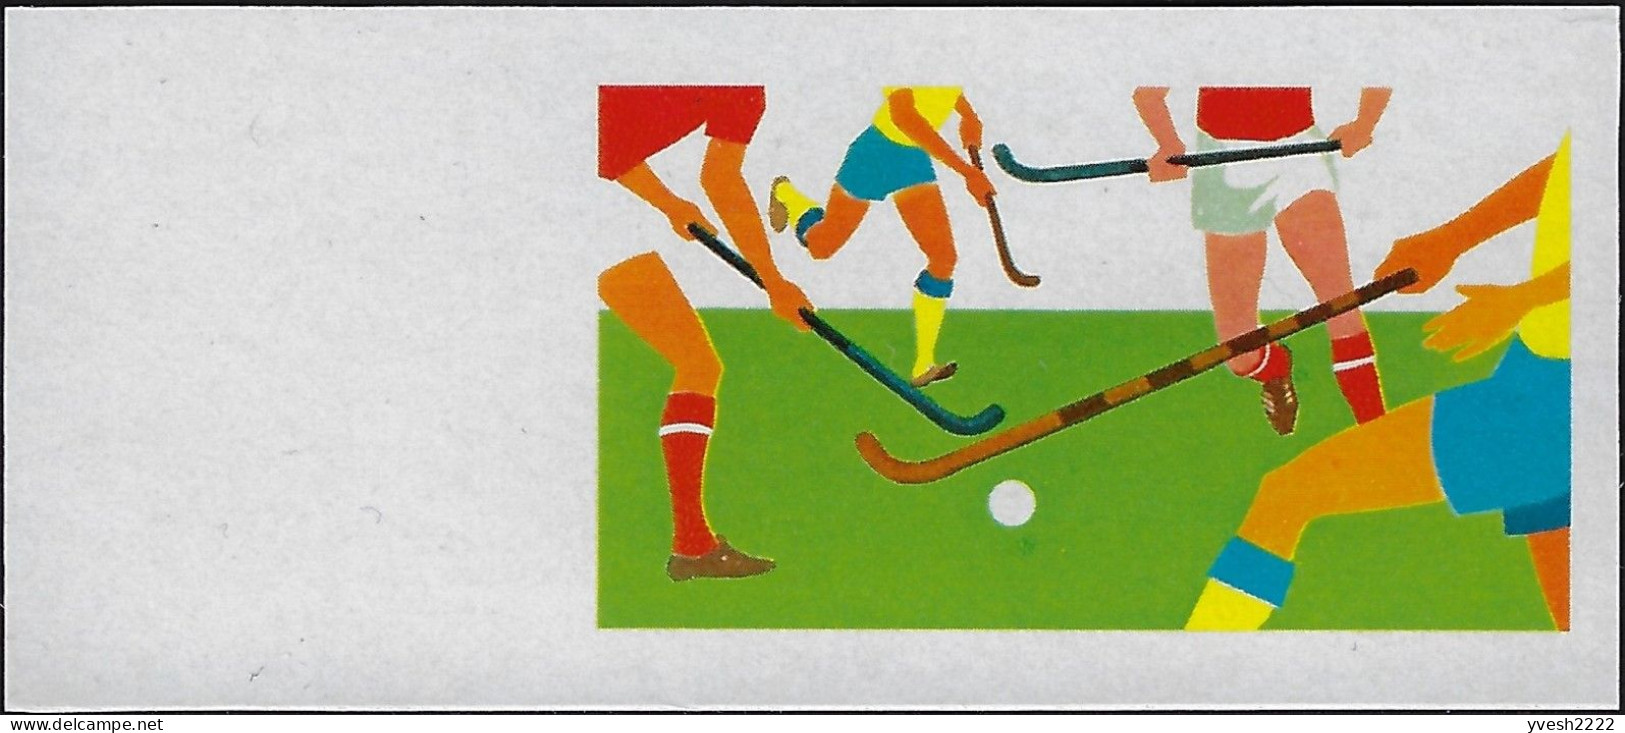 Aitutaki 1976 Y&T 174. 7 essais, couleurs progressives offset (noir jaune cyan magenta or). JO de Montréal. Hockey